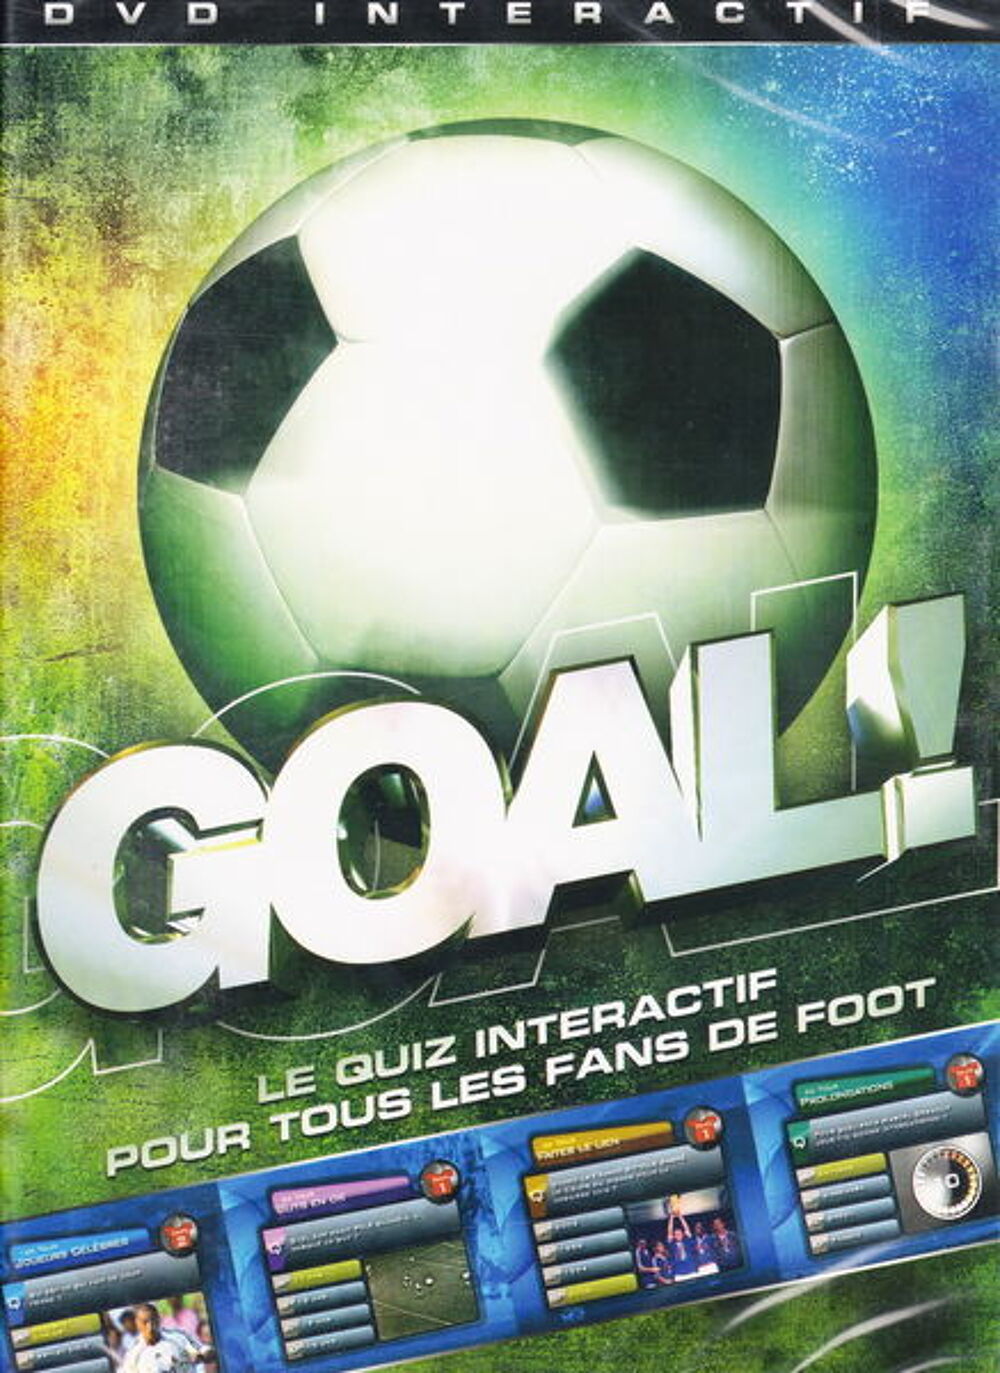 DVD jeu PC Goal quiz interactif pour les fans de foot NEUF
Consoles et jeux vidos